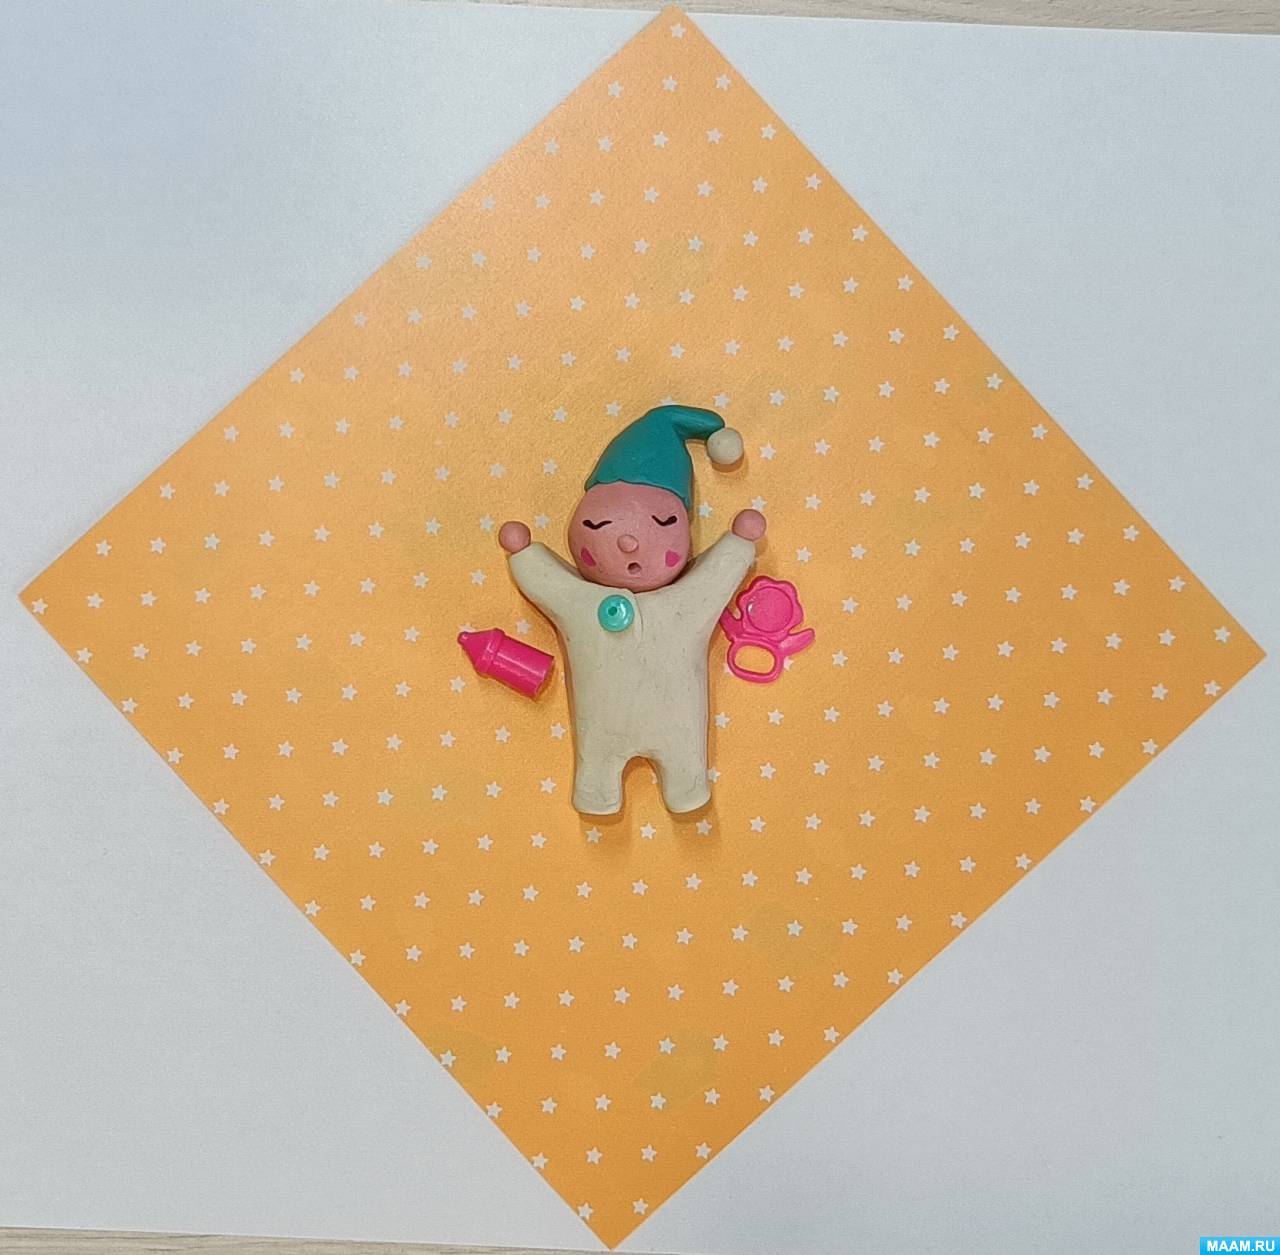 Мастер-класс по лепке из цветного пластилина «Малыш» ко Дню ребёнка в Российской Федерации